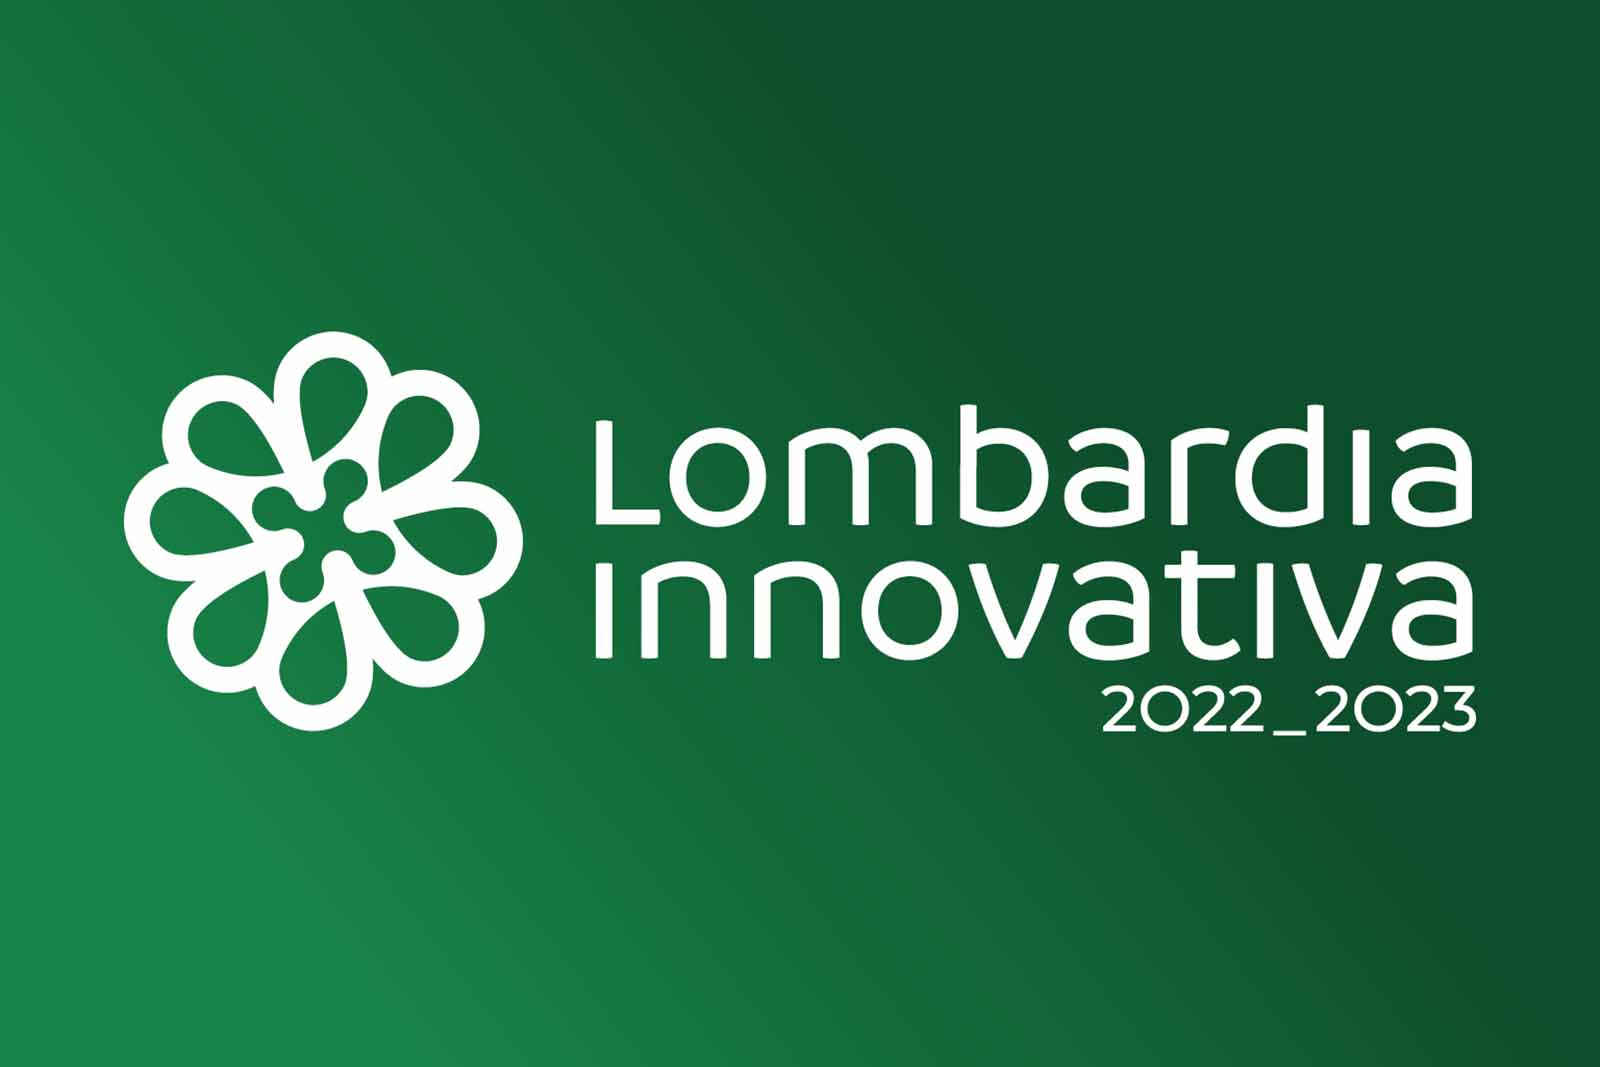 Lombardia Innovativa Awards